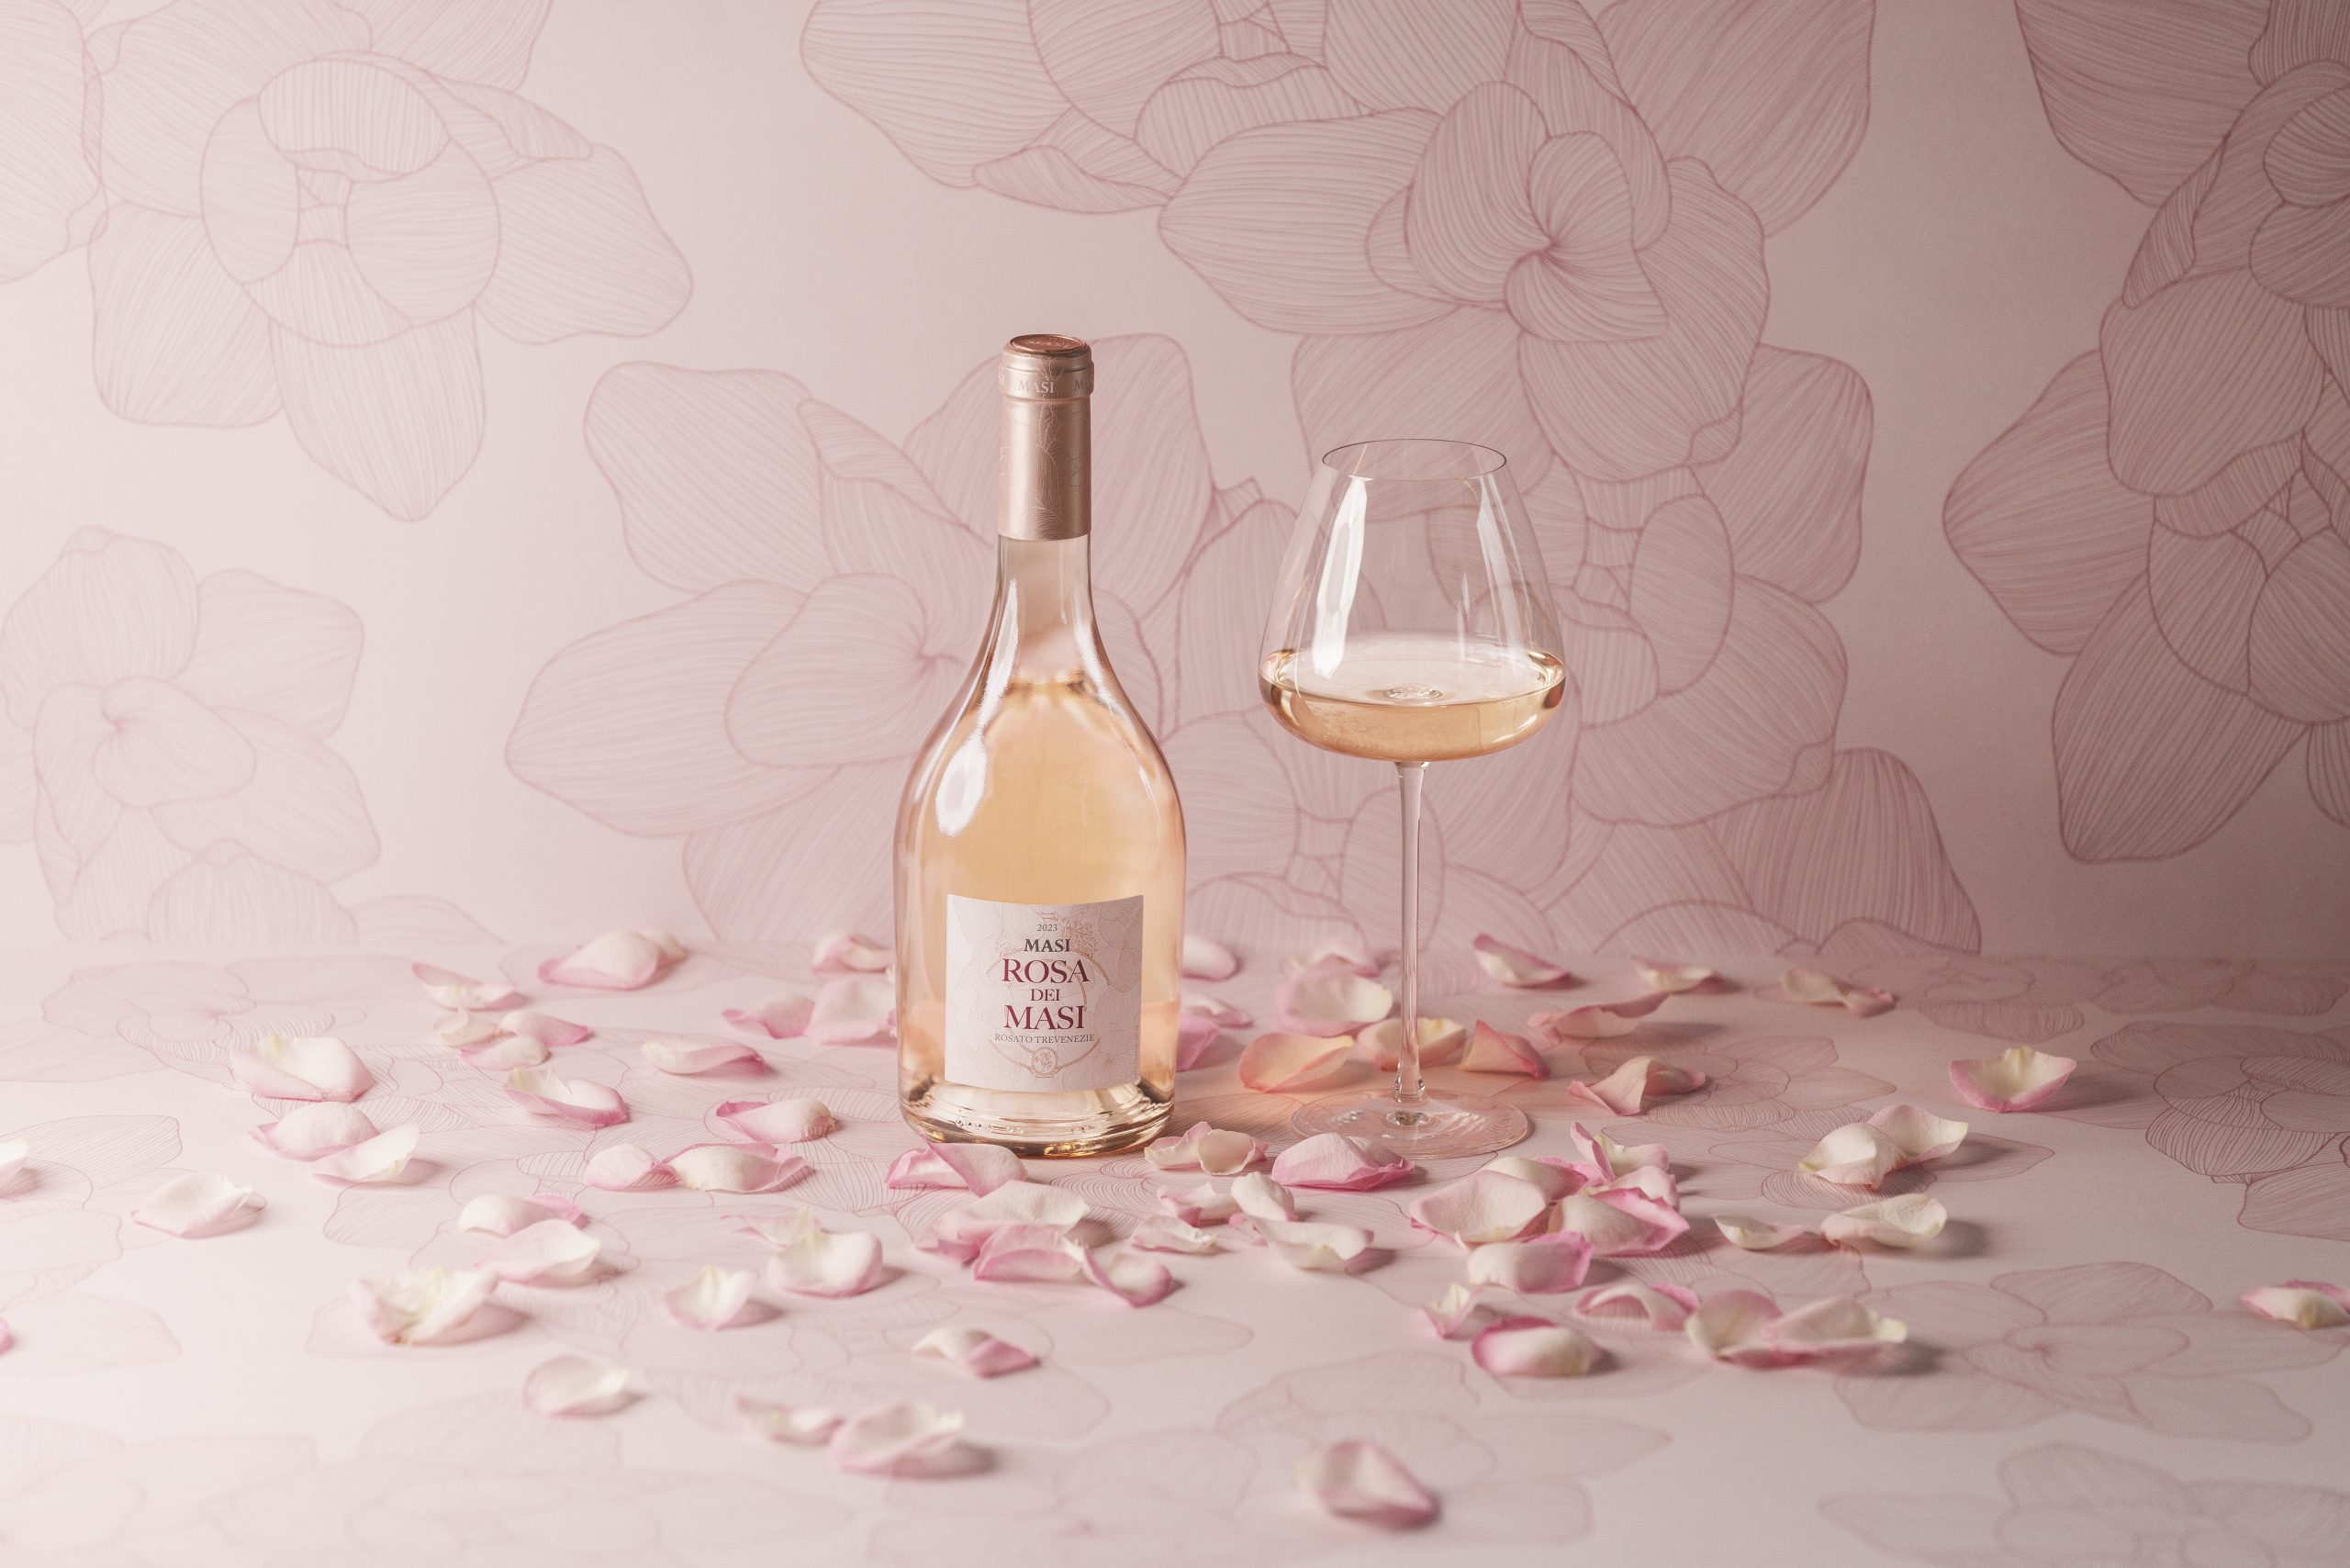 一瓶 Rosa dei Masi 新酒与一杯葡萄酒相映成趣。周围散落着玫瑰花瓣，淡粉色的背景上有与酒瓶相同的水墨画玫瑰图案。